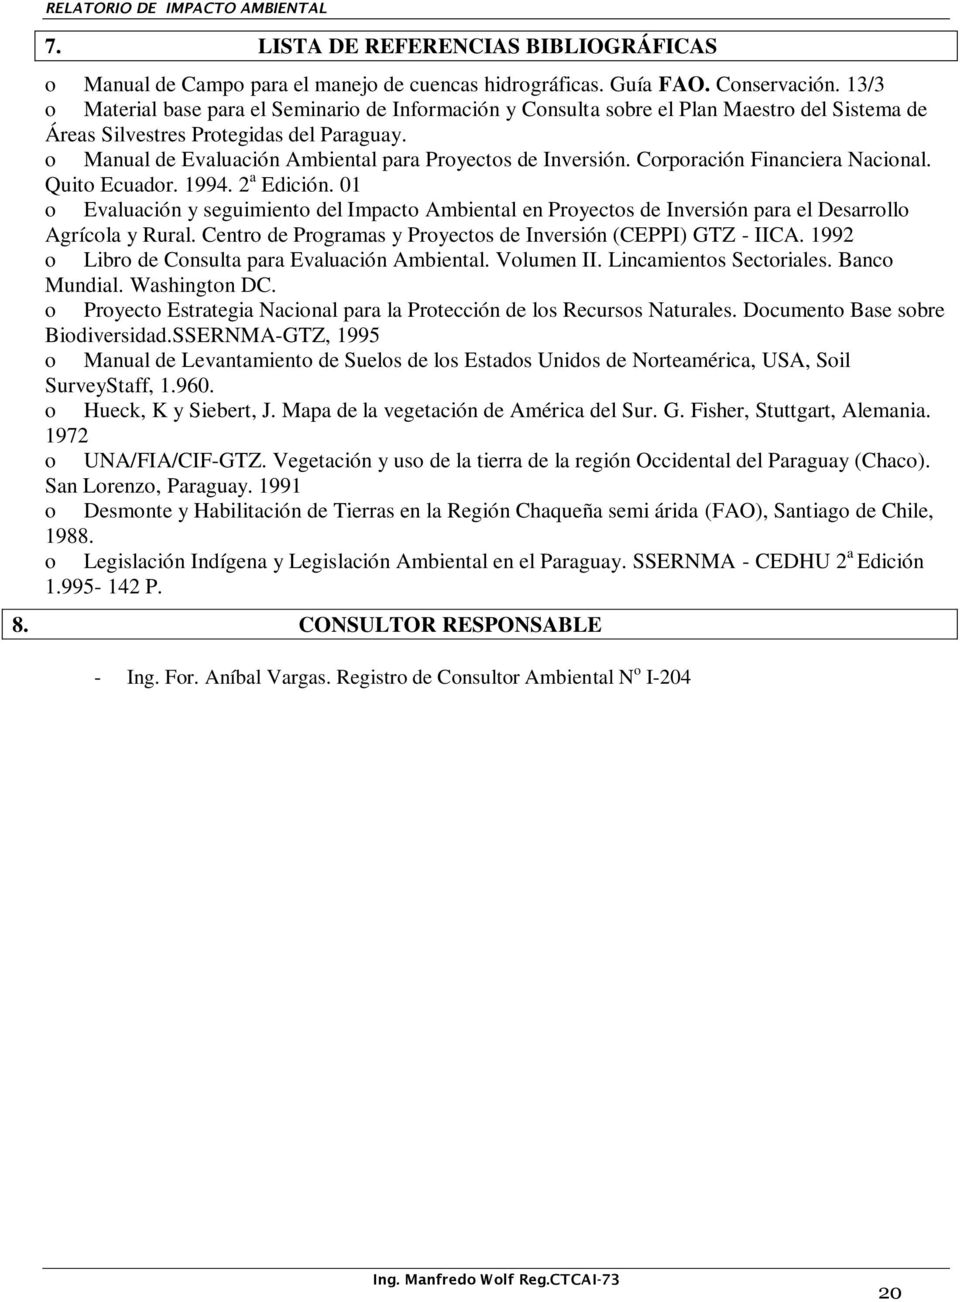 o Manual de Evaluación Ambiental para Proyectos de Inversión. Corporación Financiera Nacional. Quito Ecuador. 1994. 2 a Edición.